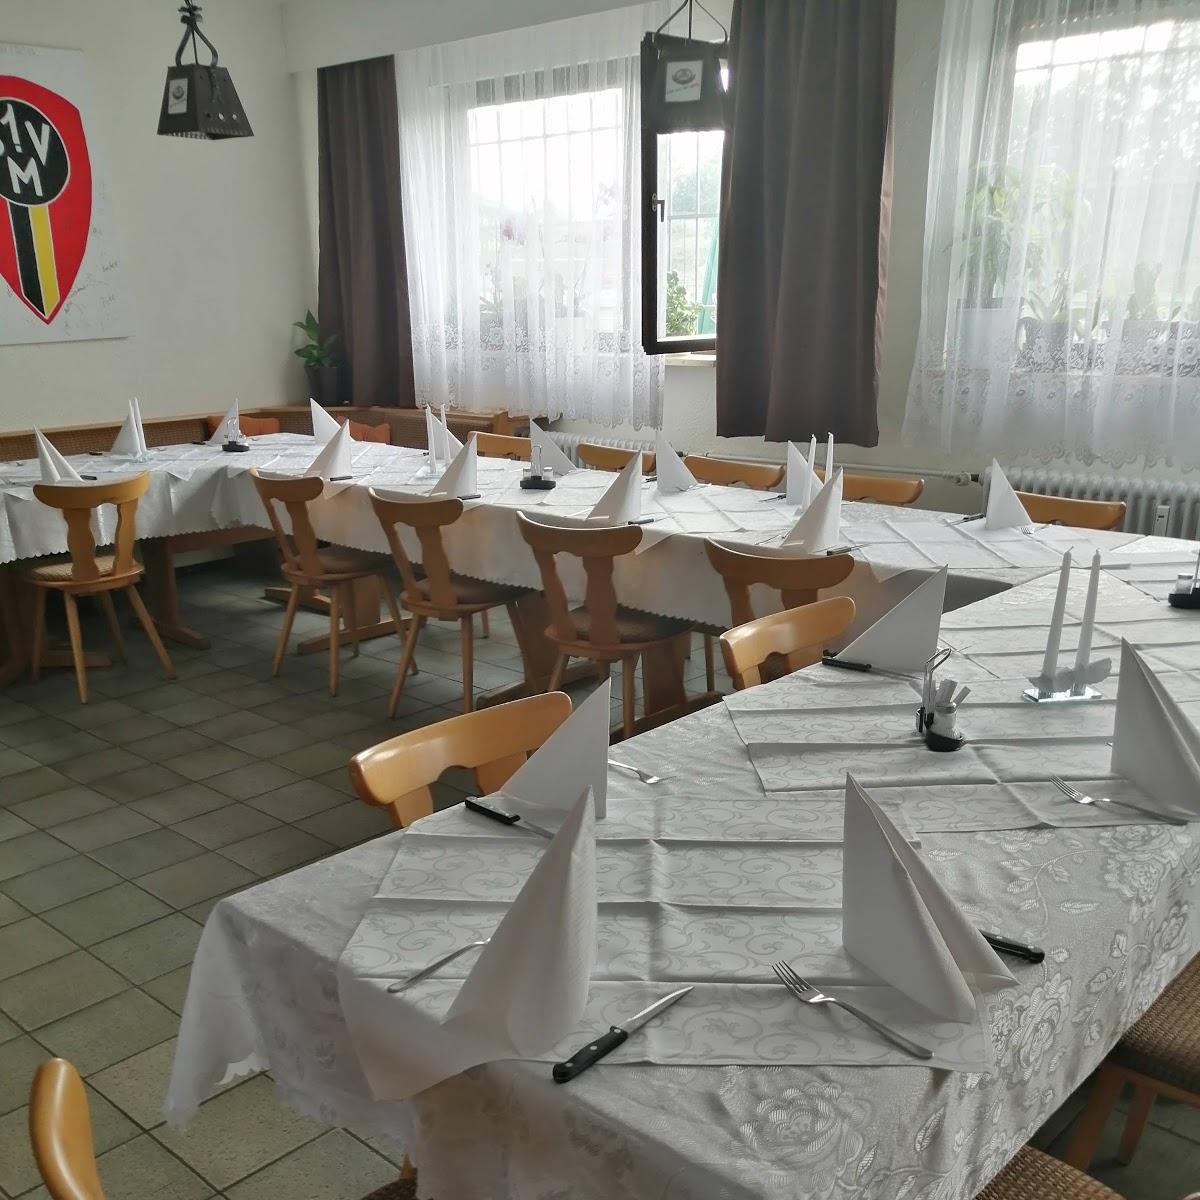 Restaurant "1. SV Mörsch e. V." in Rheinstetten